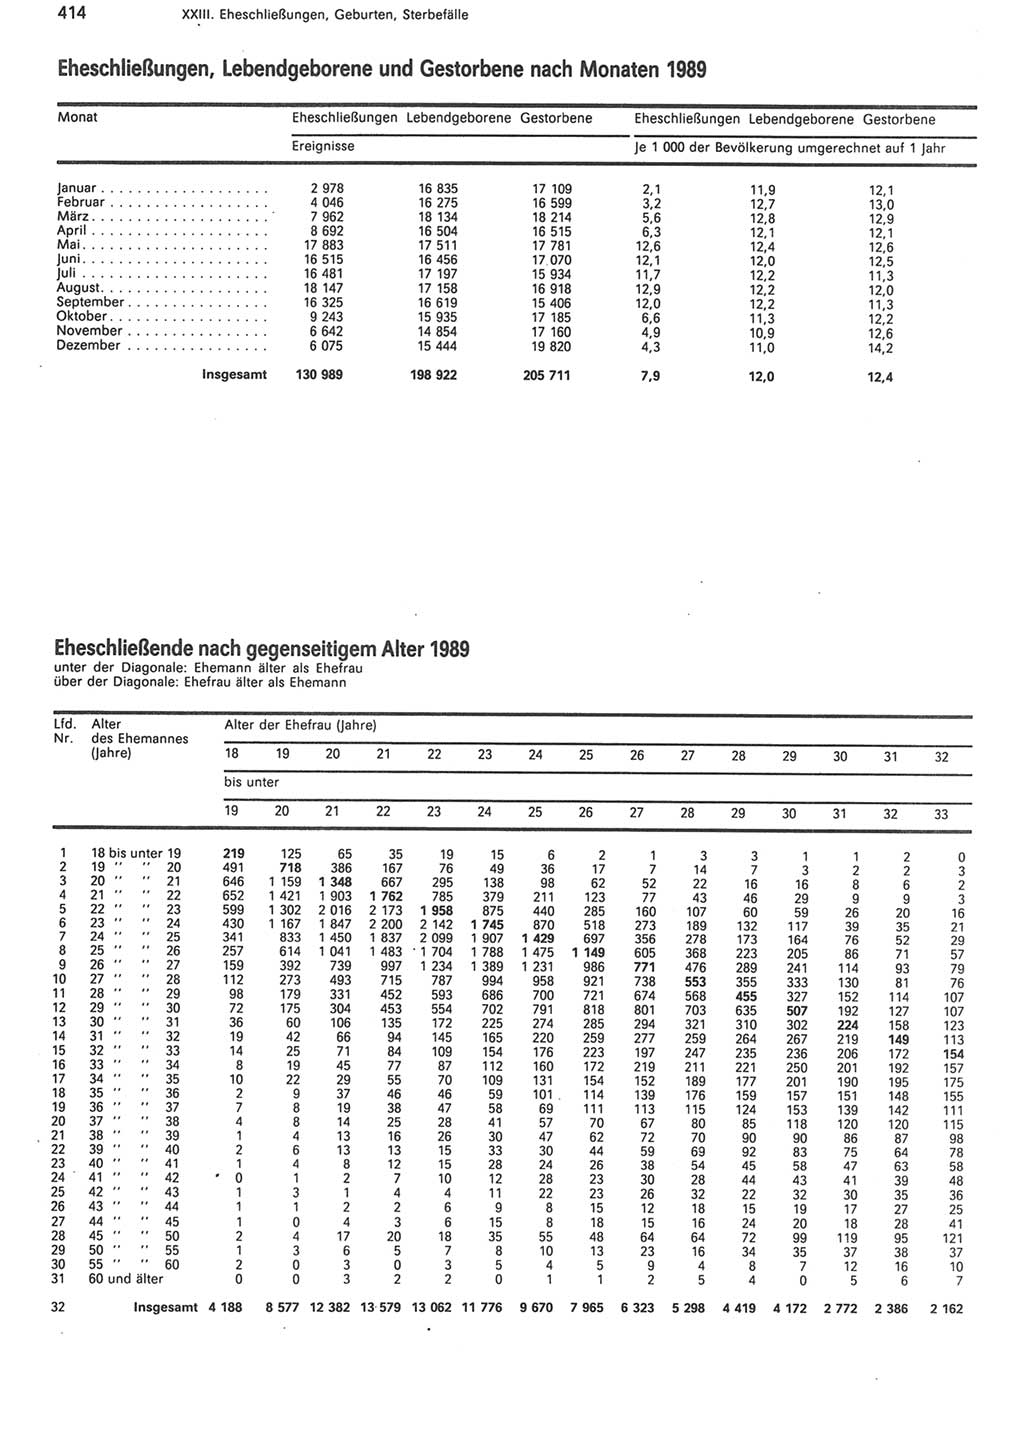 Statistisches Jahrbuch der Deutschen Demokratischen Republik (DDR) 1990, Seite 414 (Stat. Jb. DDR 1990, S. 414)